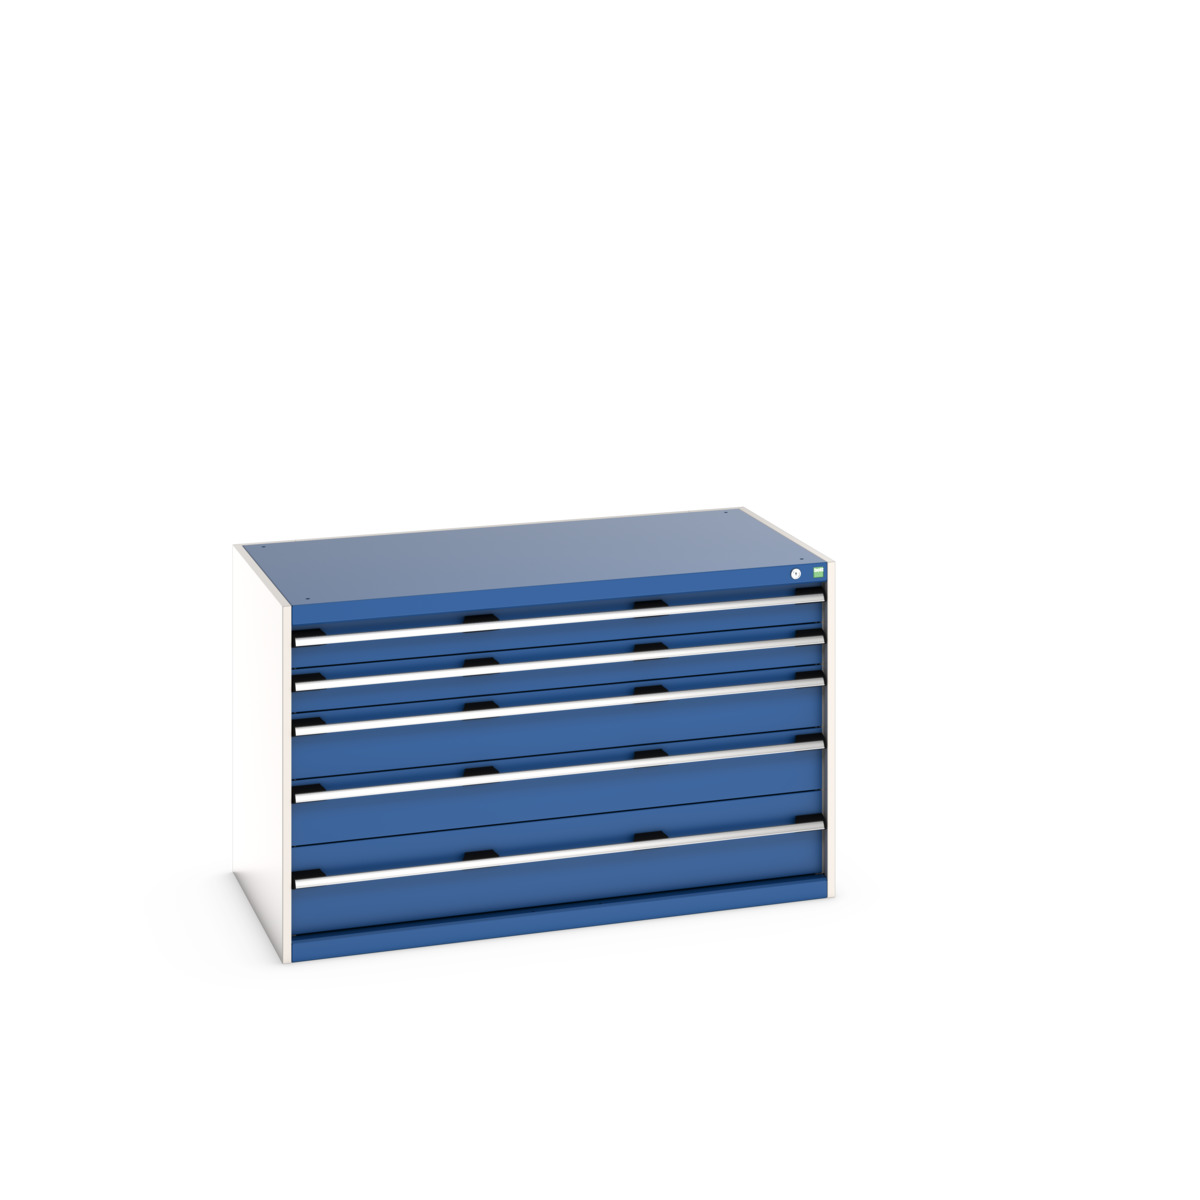 40030008.11V - cubio drawer cabinet